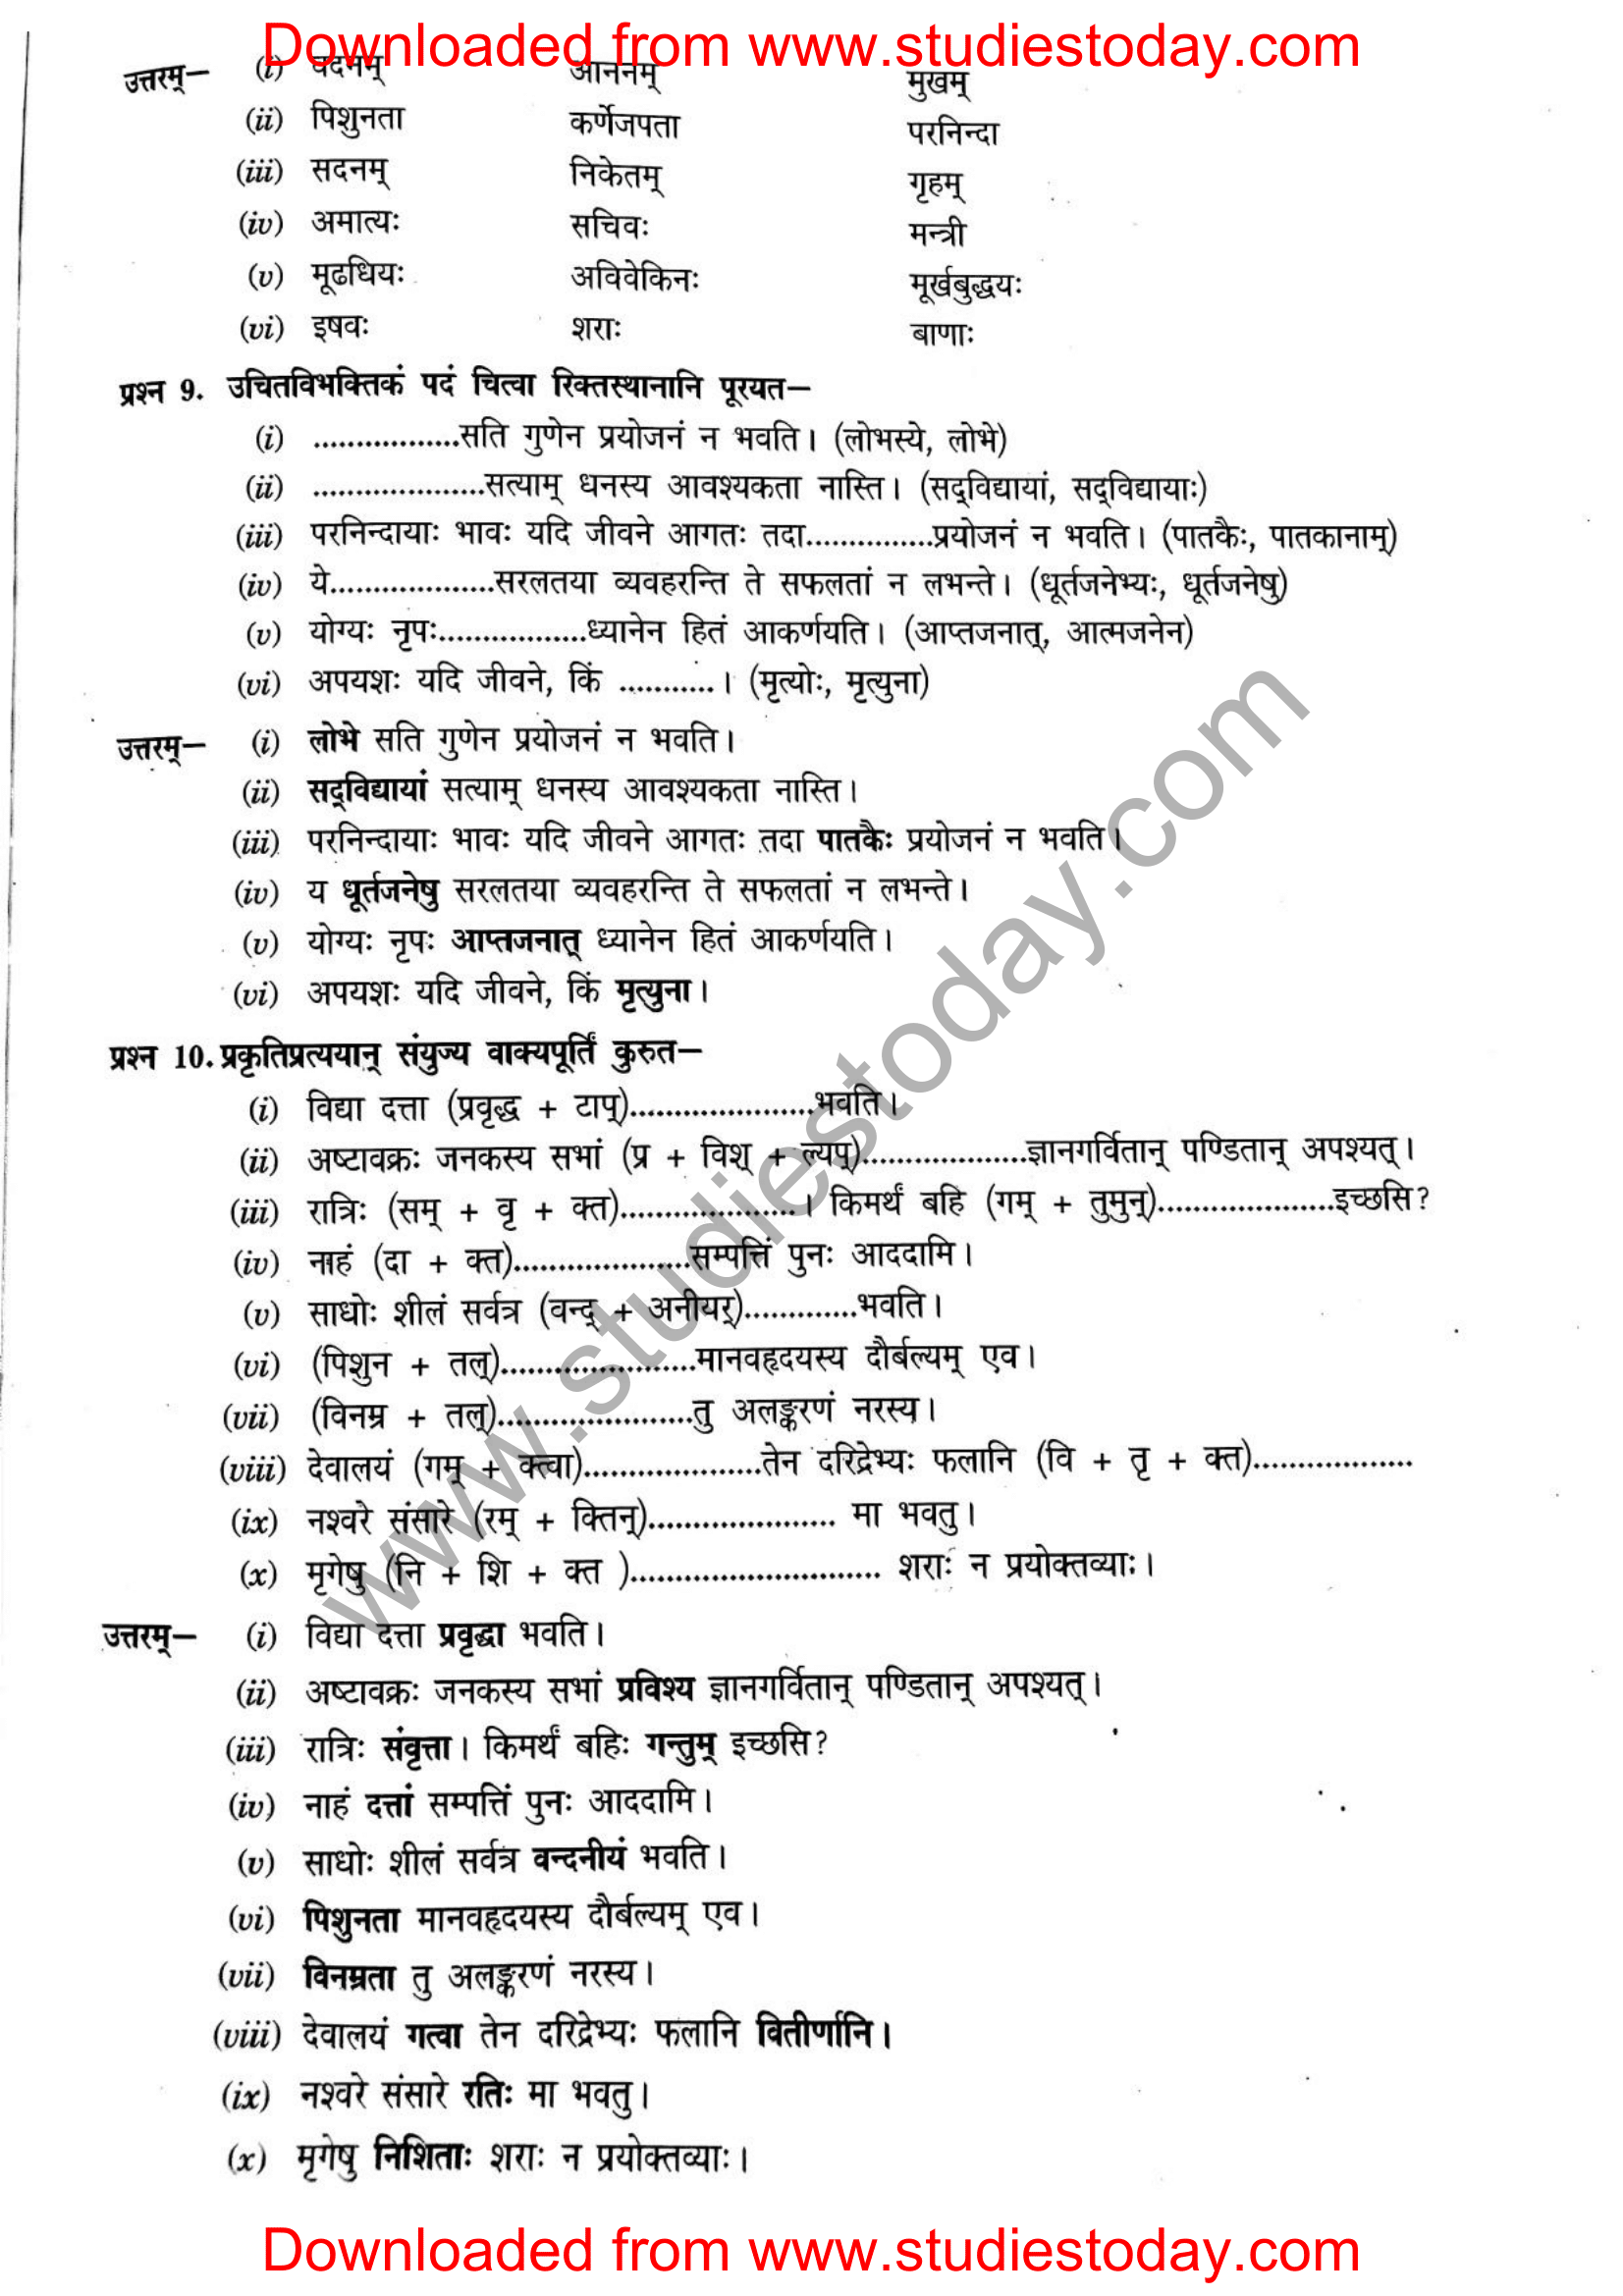 ncert-solutions-class-12-sanskrit-ritikia-chapter-6-10